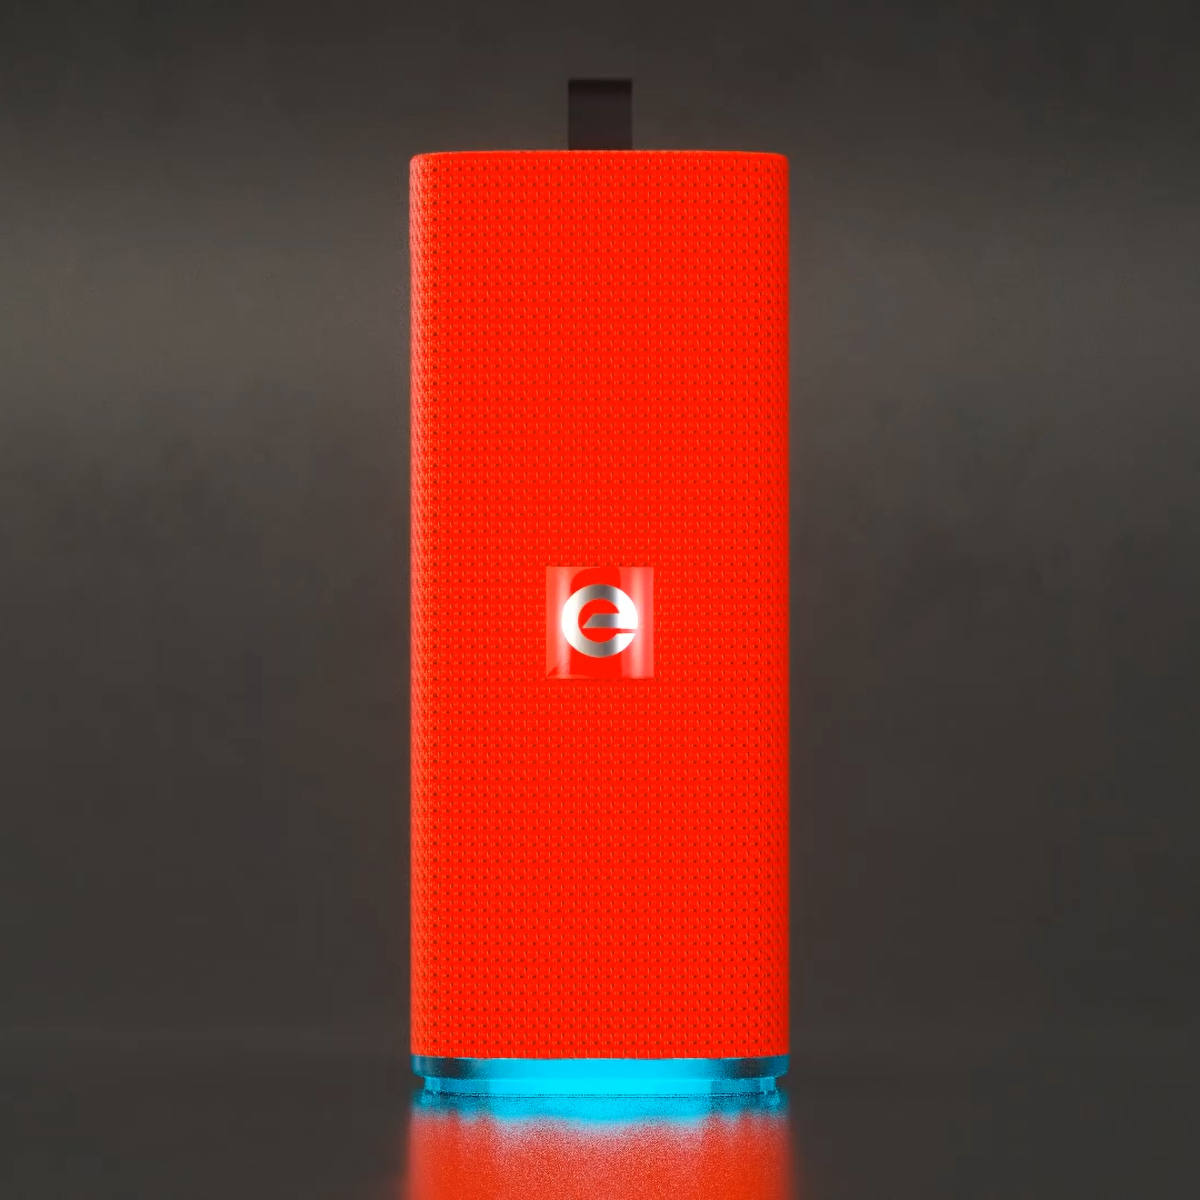 Caixa de Som Bluetooth Multimídia FM SD P2 USB Mic SoundBox Max Portátil com Led Colorido Exbom CS-M33BTL Vermelha